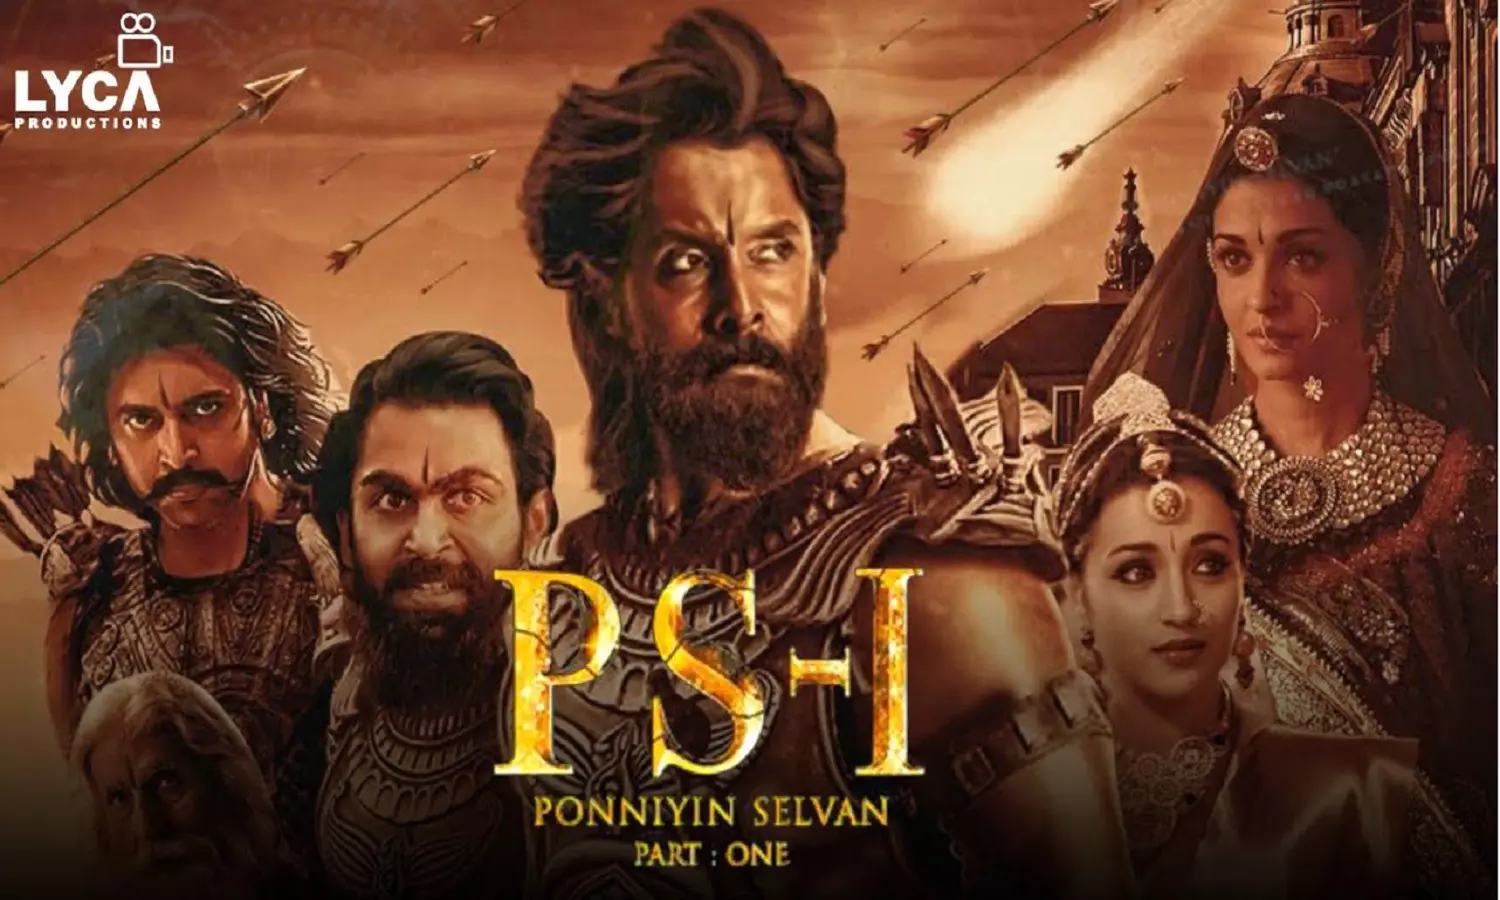 PS-1 Film: भारत की दूसरी सबसे महंगी फिल्म, PS-1 'पोनियिन सेलवन' नॉवेल पर बेस्ड है और इसी साल रिलीज होगी | PS-1 Film: India's second most expensive film, PS-1 is based on